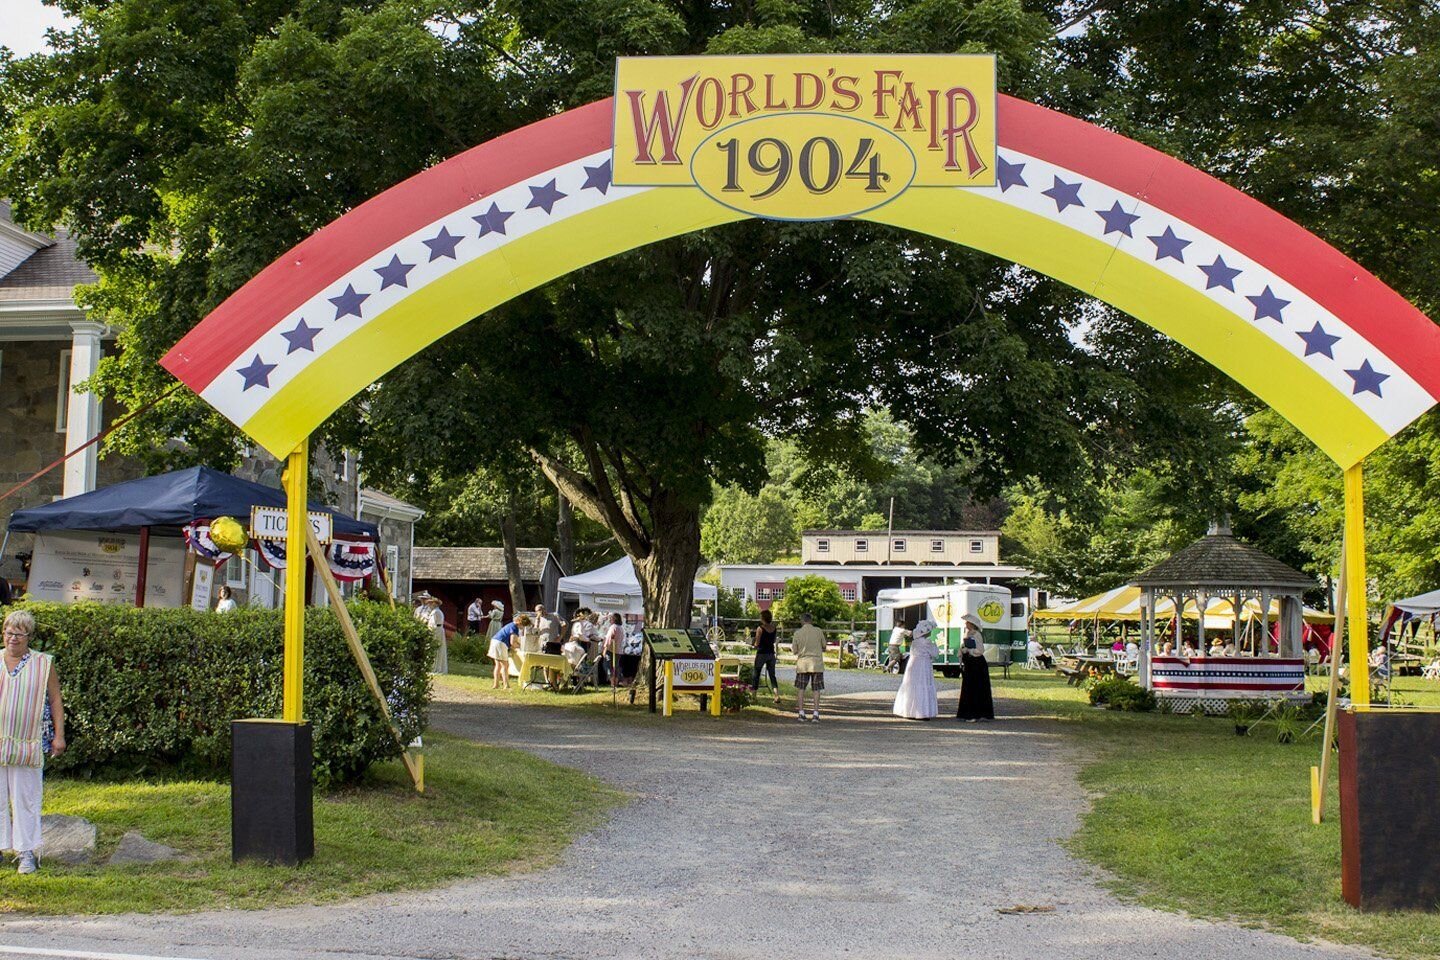 1904Worlds Fair-worlds fair arch-1440x960-1920w.jpg